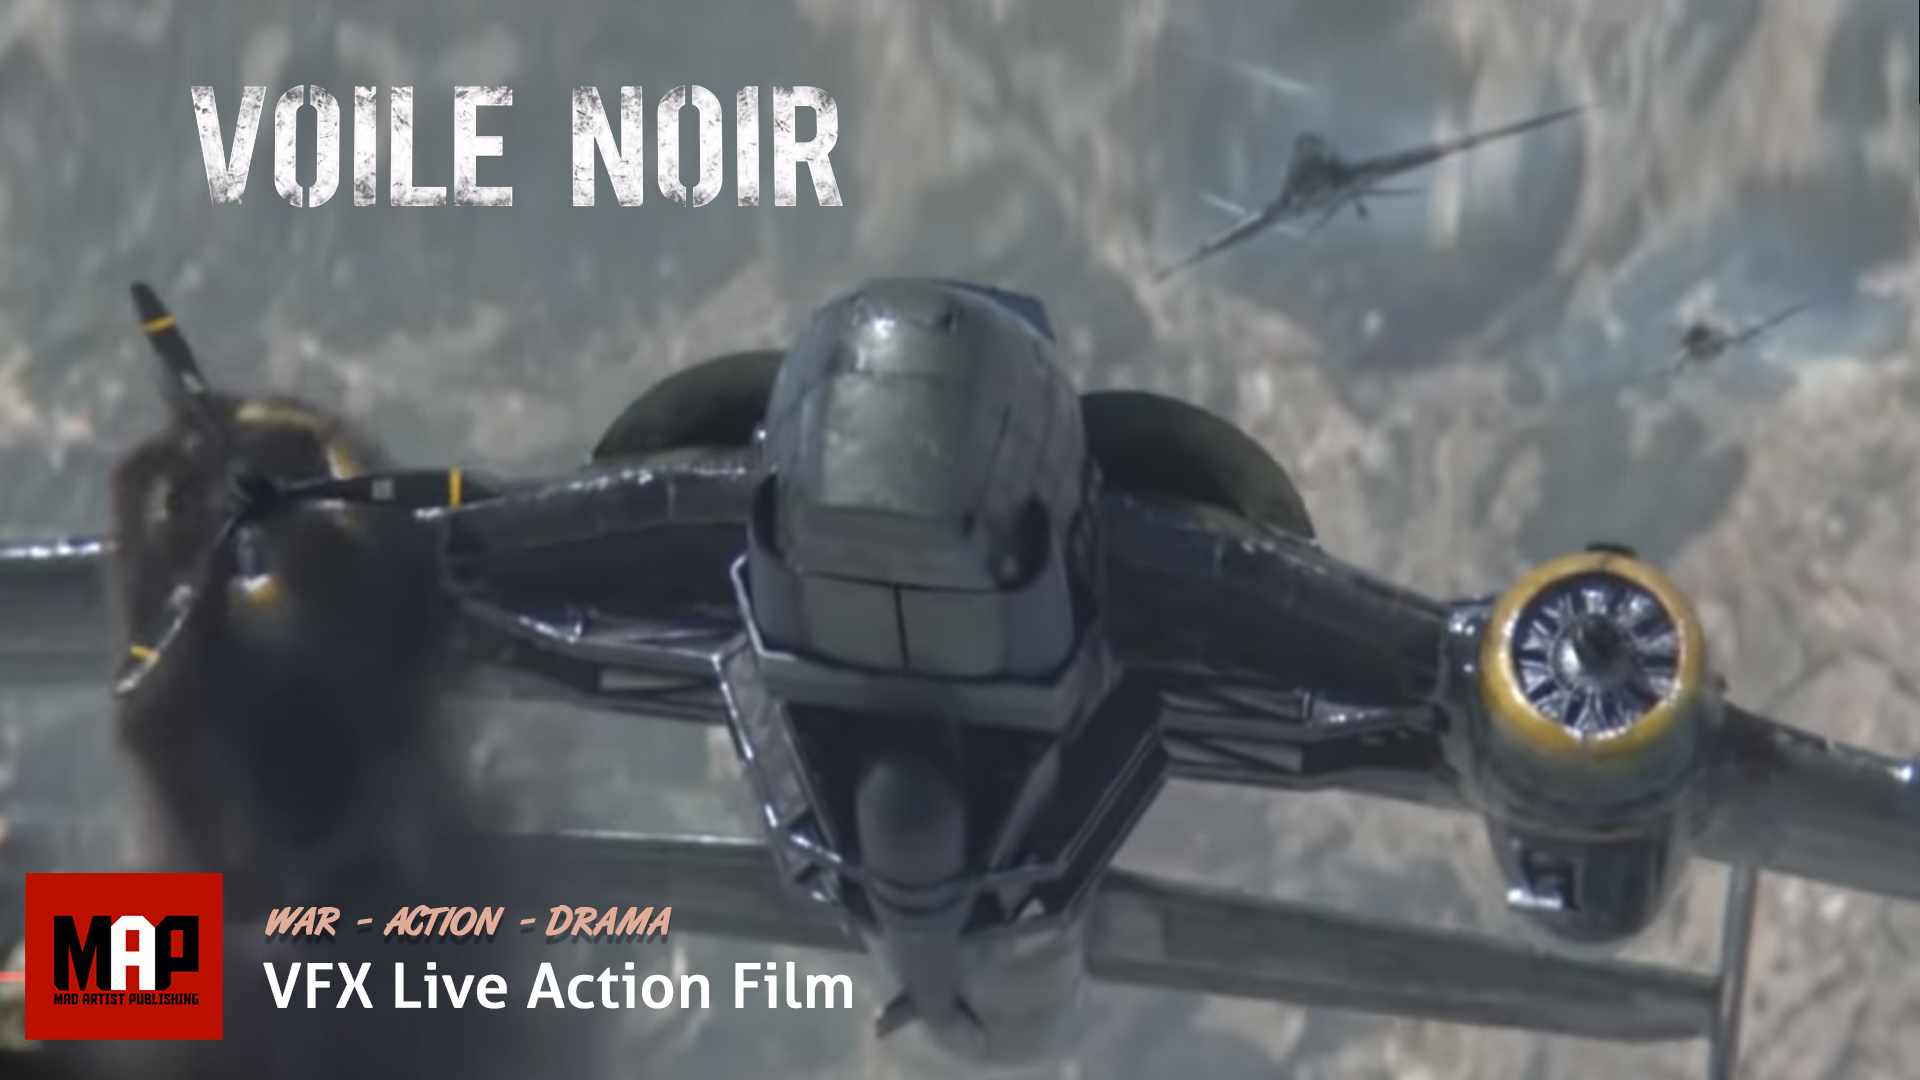 VFX & CGI Live Action Short War Film ** VOILE NOIR ** NAZI Dogfight Adventure Movie by ArtFx Team